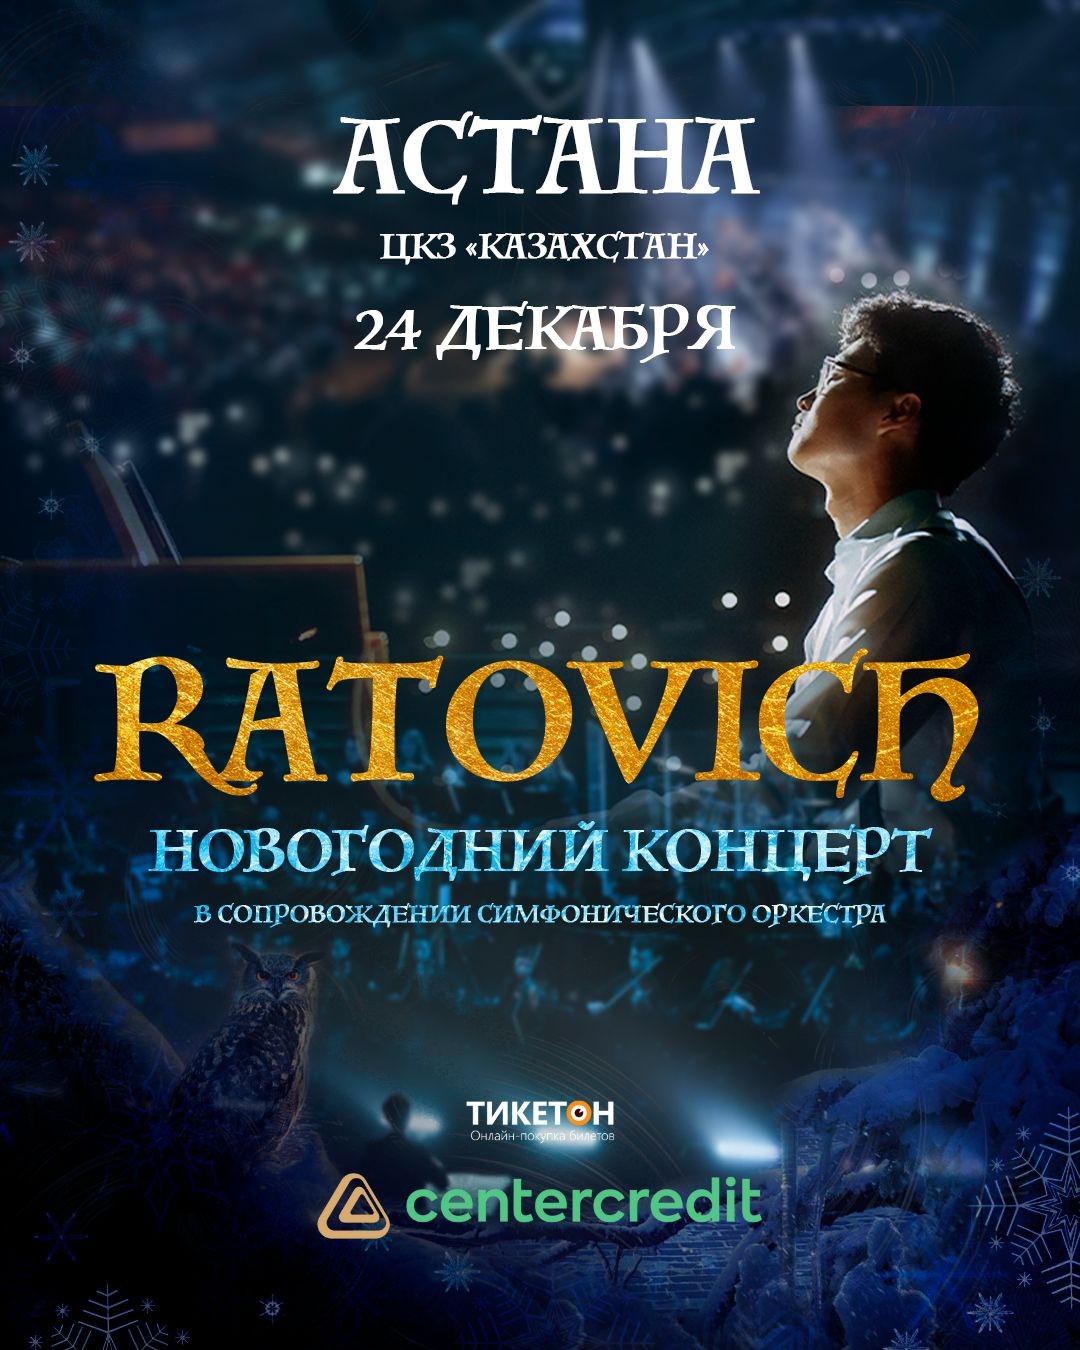 Ratovich «Новогодний концерт» в Астане